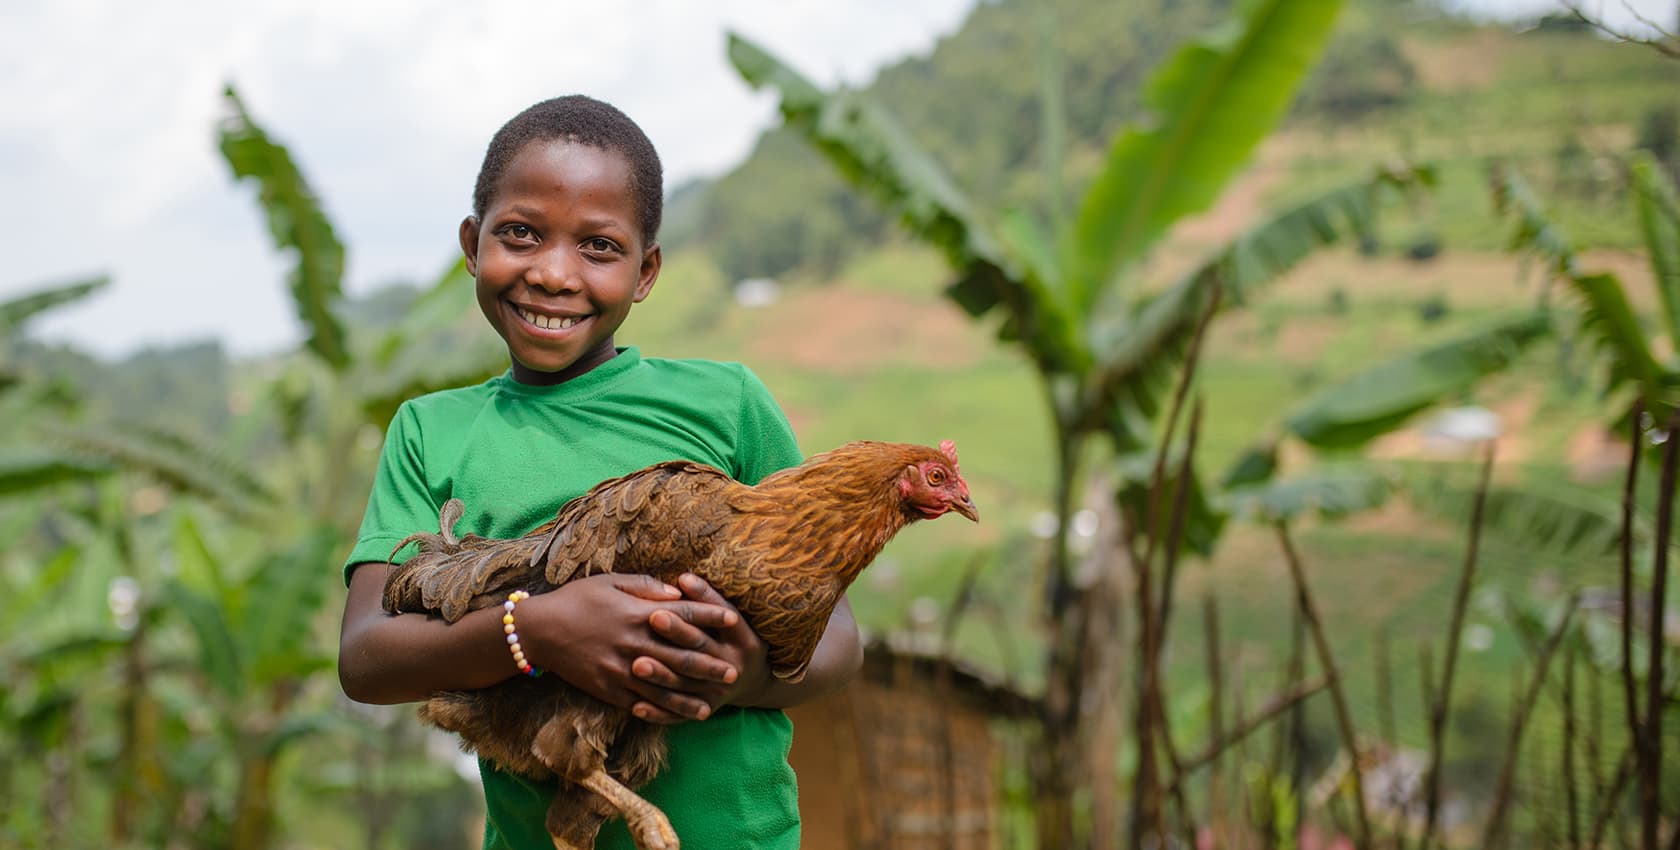 A boy in a green shirt holds a chicken.